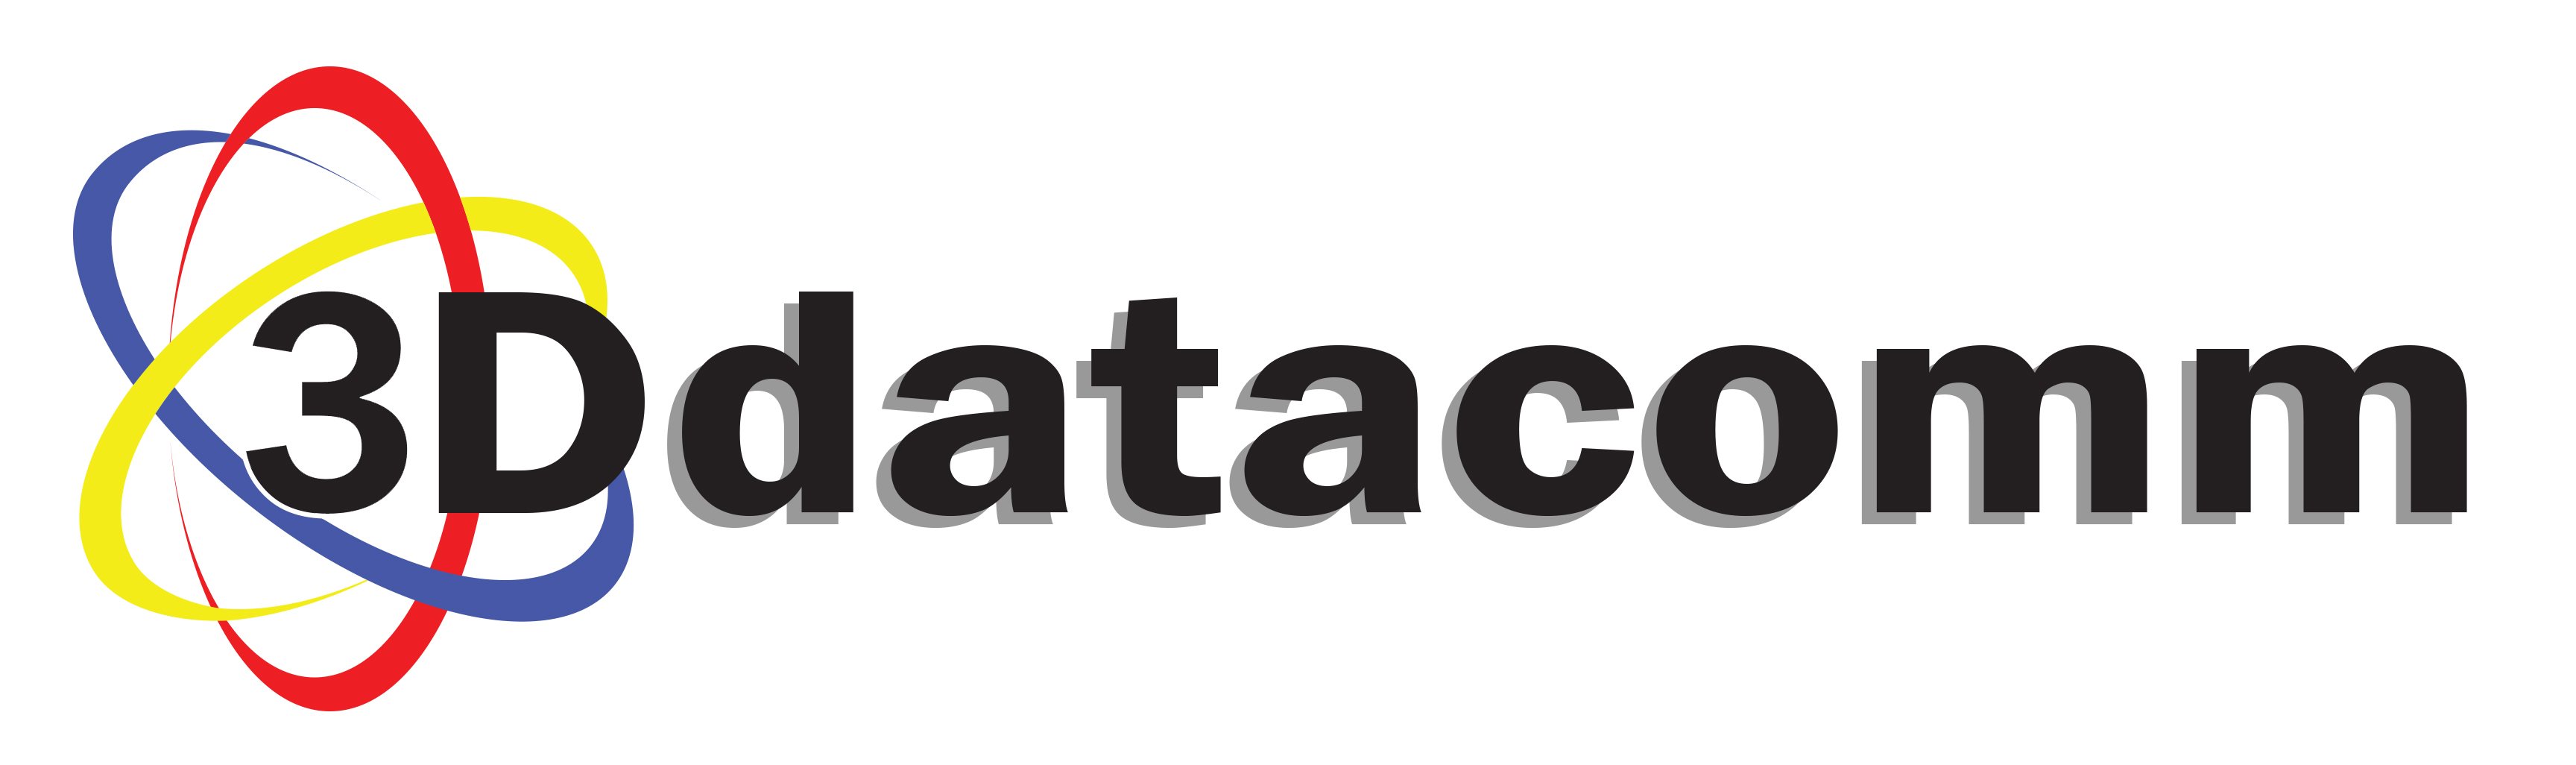 3D-datacomm_Logo